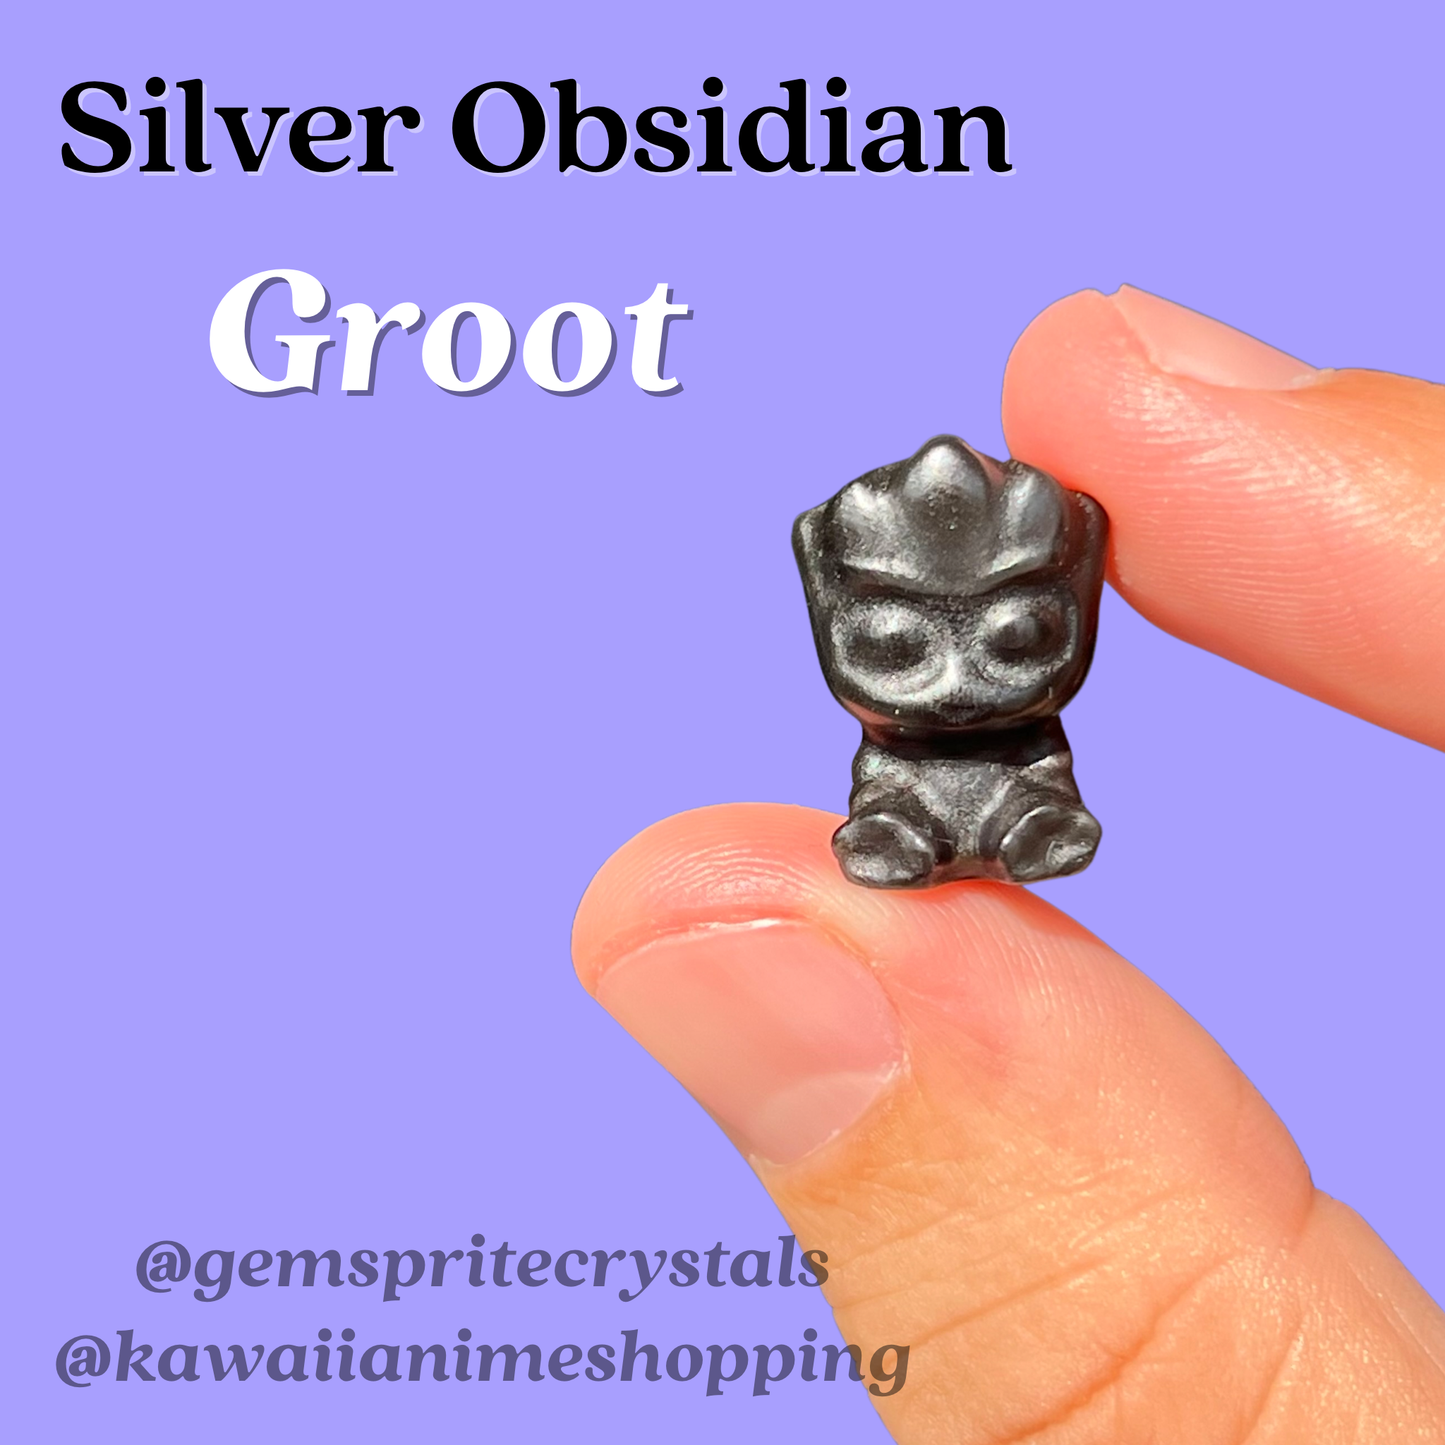 Silver Obsidian Groot